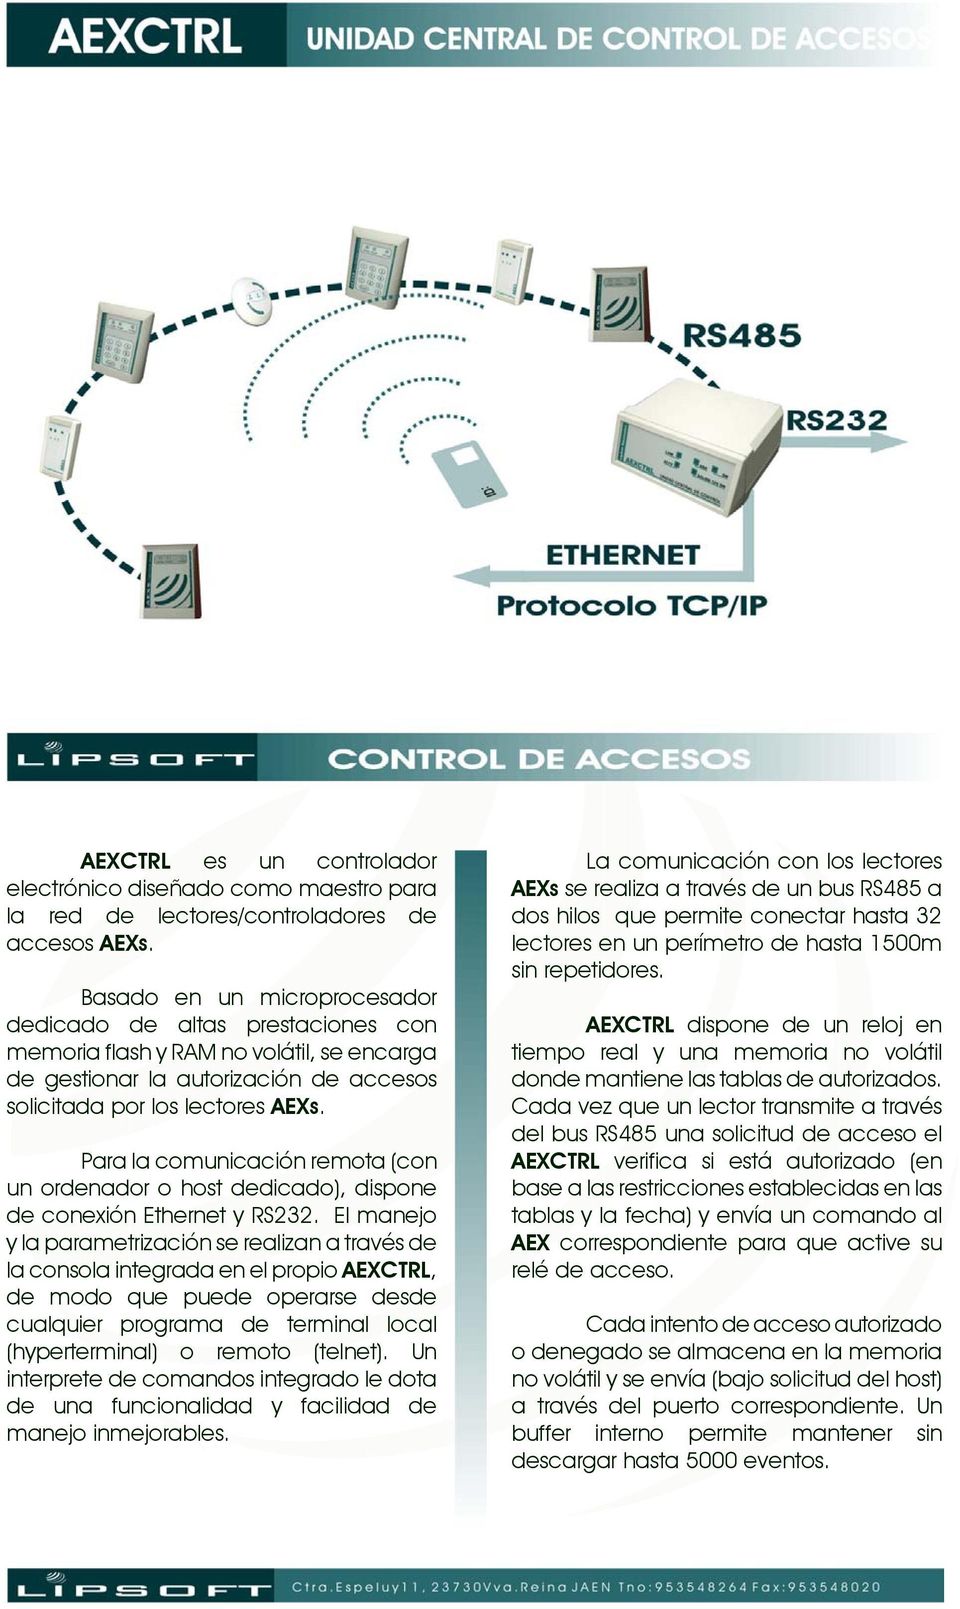 Para la comunicación remota (con un ordenador o host dedicado), dispone de conexión Ethernet y RS232.